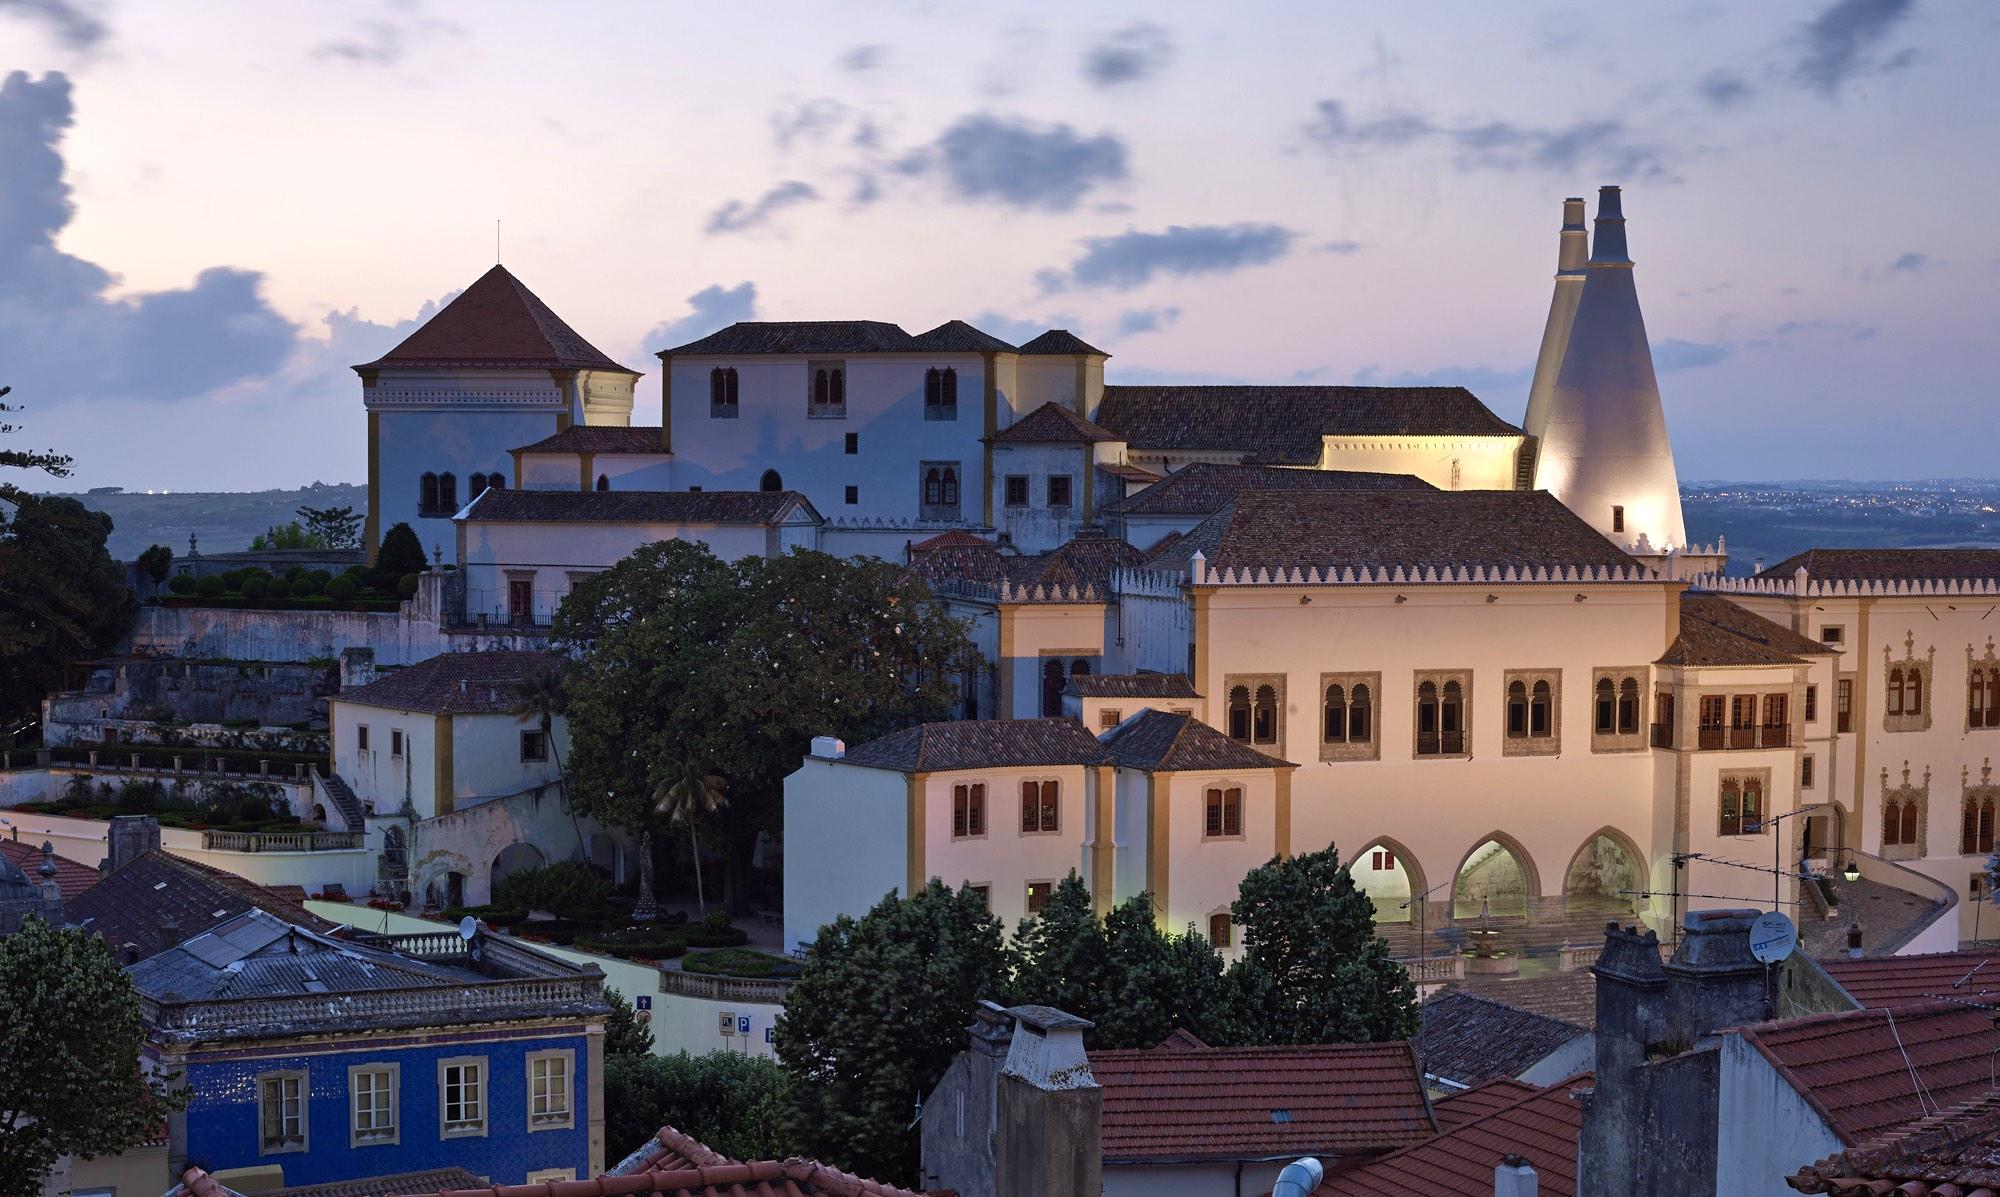 Le palais national de Sintra, couronné par ses deux cheminées coniques géantes, est un élément caractéristique du paysage de Sintra depuis plusieurs siècles. – © PSML / Angelo Hornak